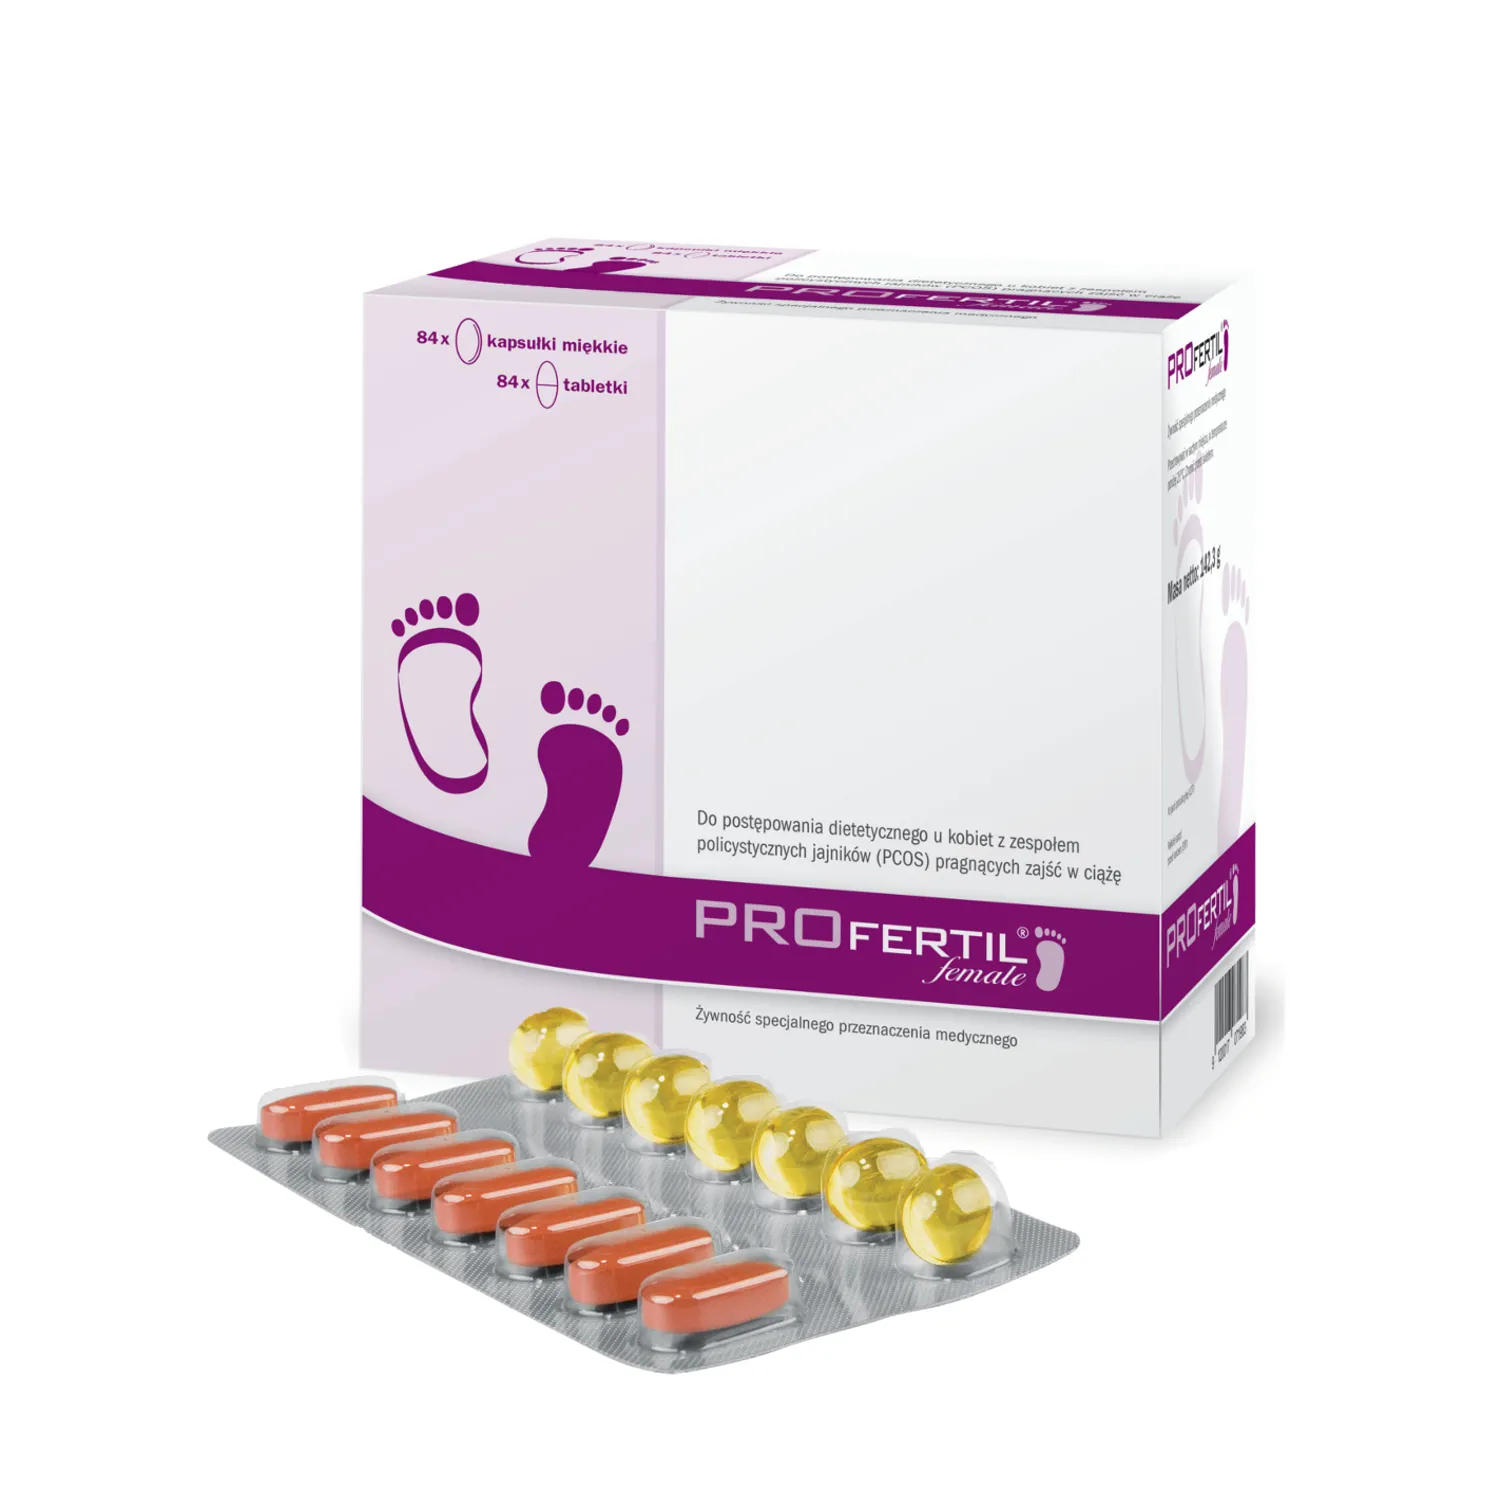 Profertil Female 84 tabletek + 84 kapsułek